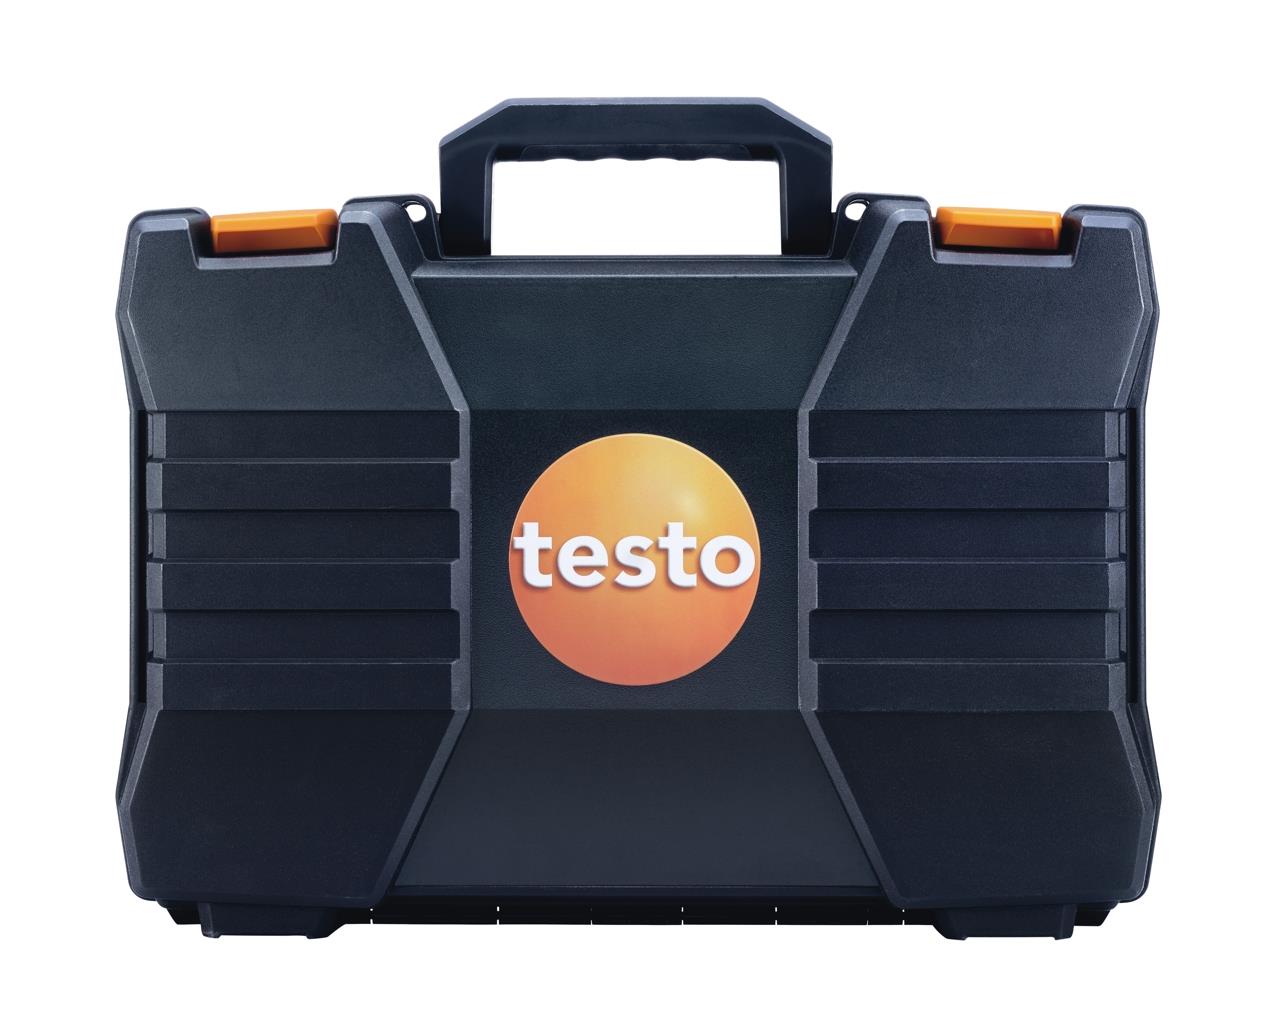 Testo Basis-Systemkoffer m. doppeltem Boden für Modell 3xx